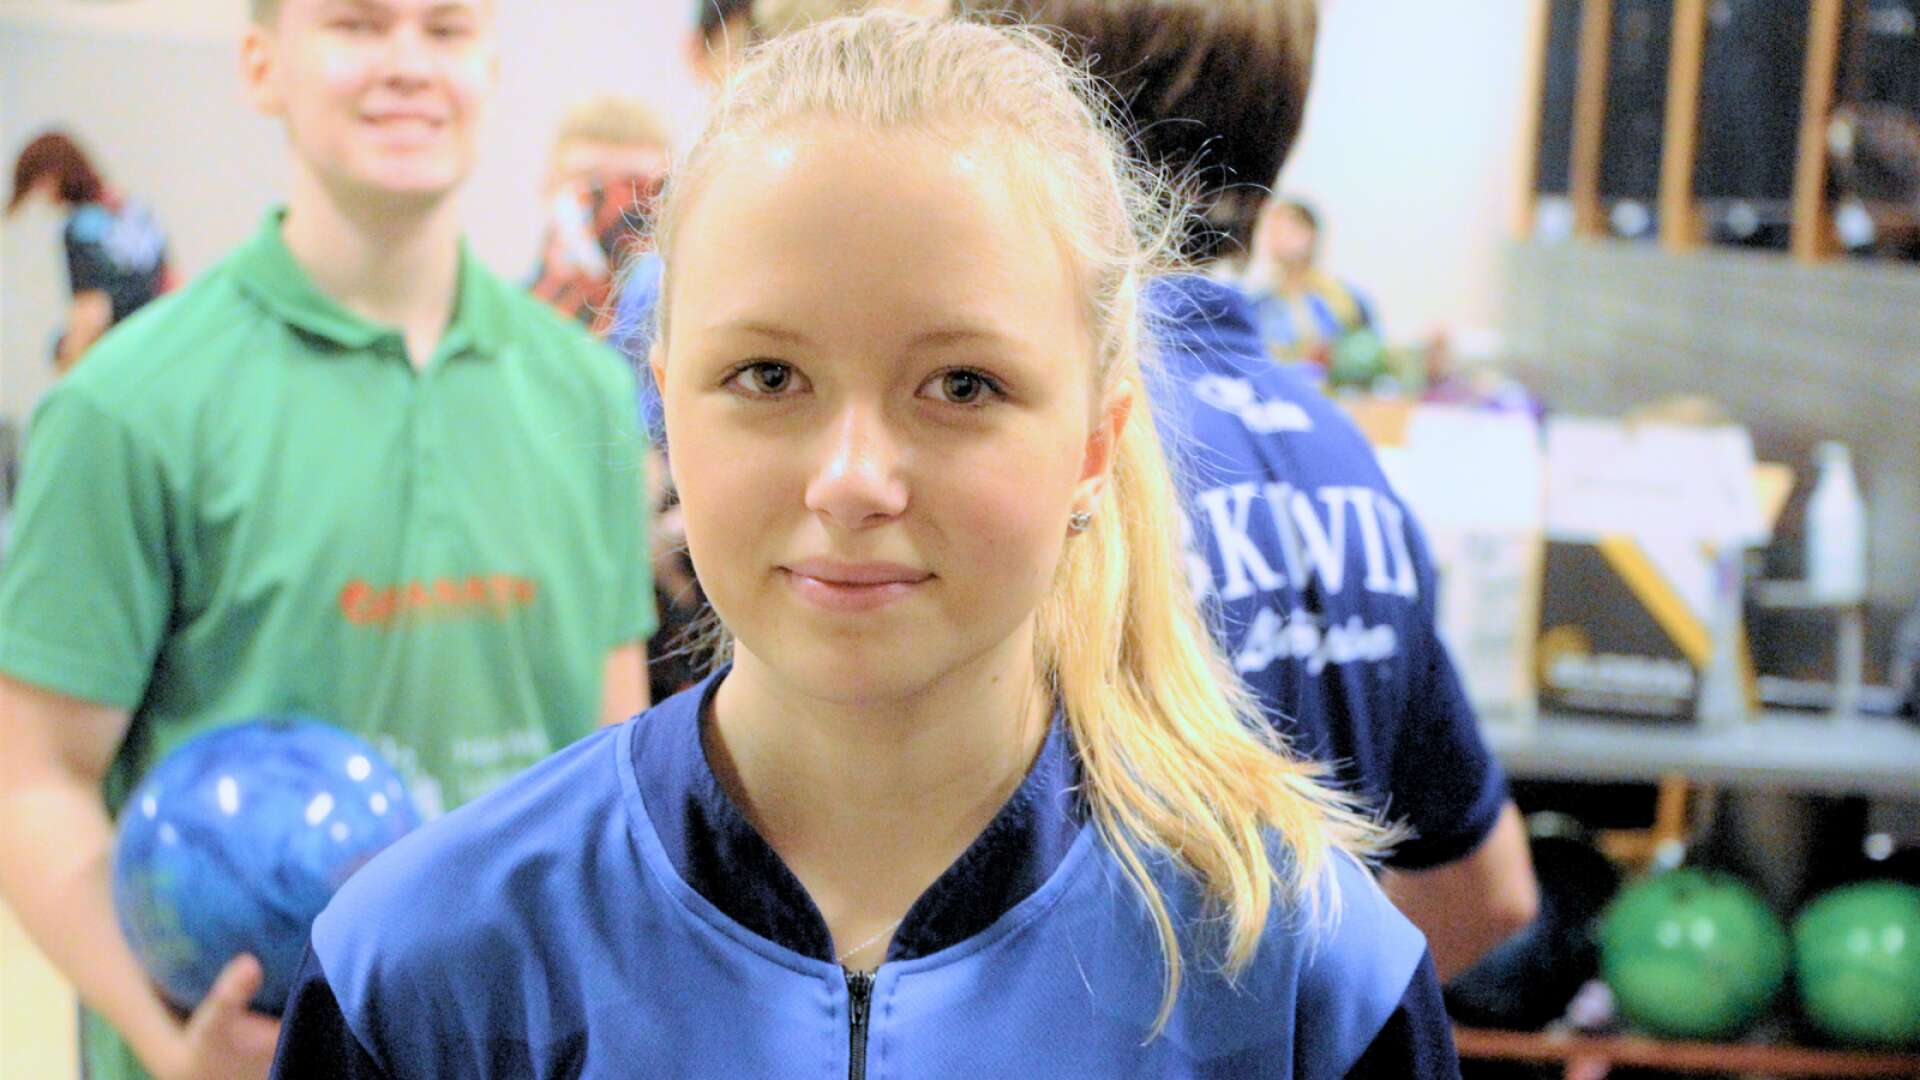 Mariestadstjejen Kajsa Samuelsson är förväntansfull inför junior-EM. Med erfarenheter från tidigare mästerskap hoppas hon vara bra förberedd. (ARKIV)